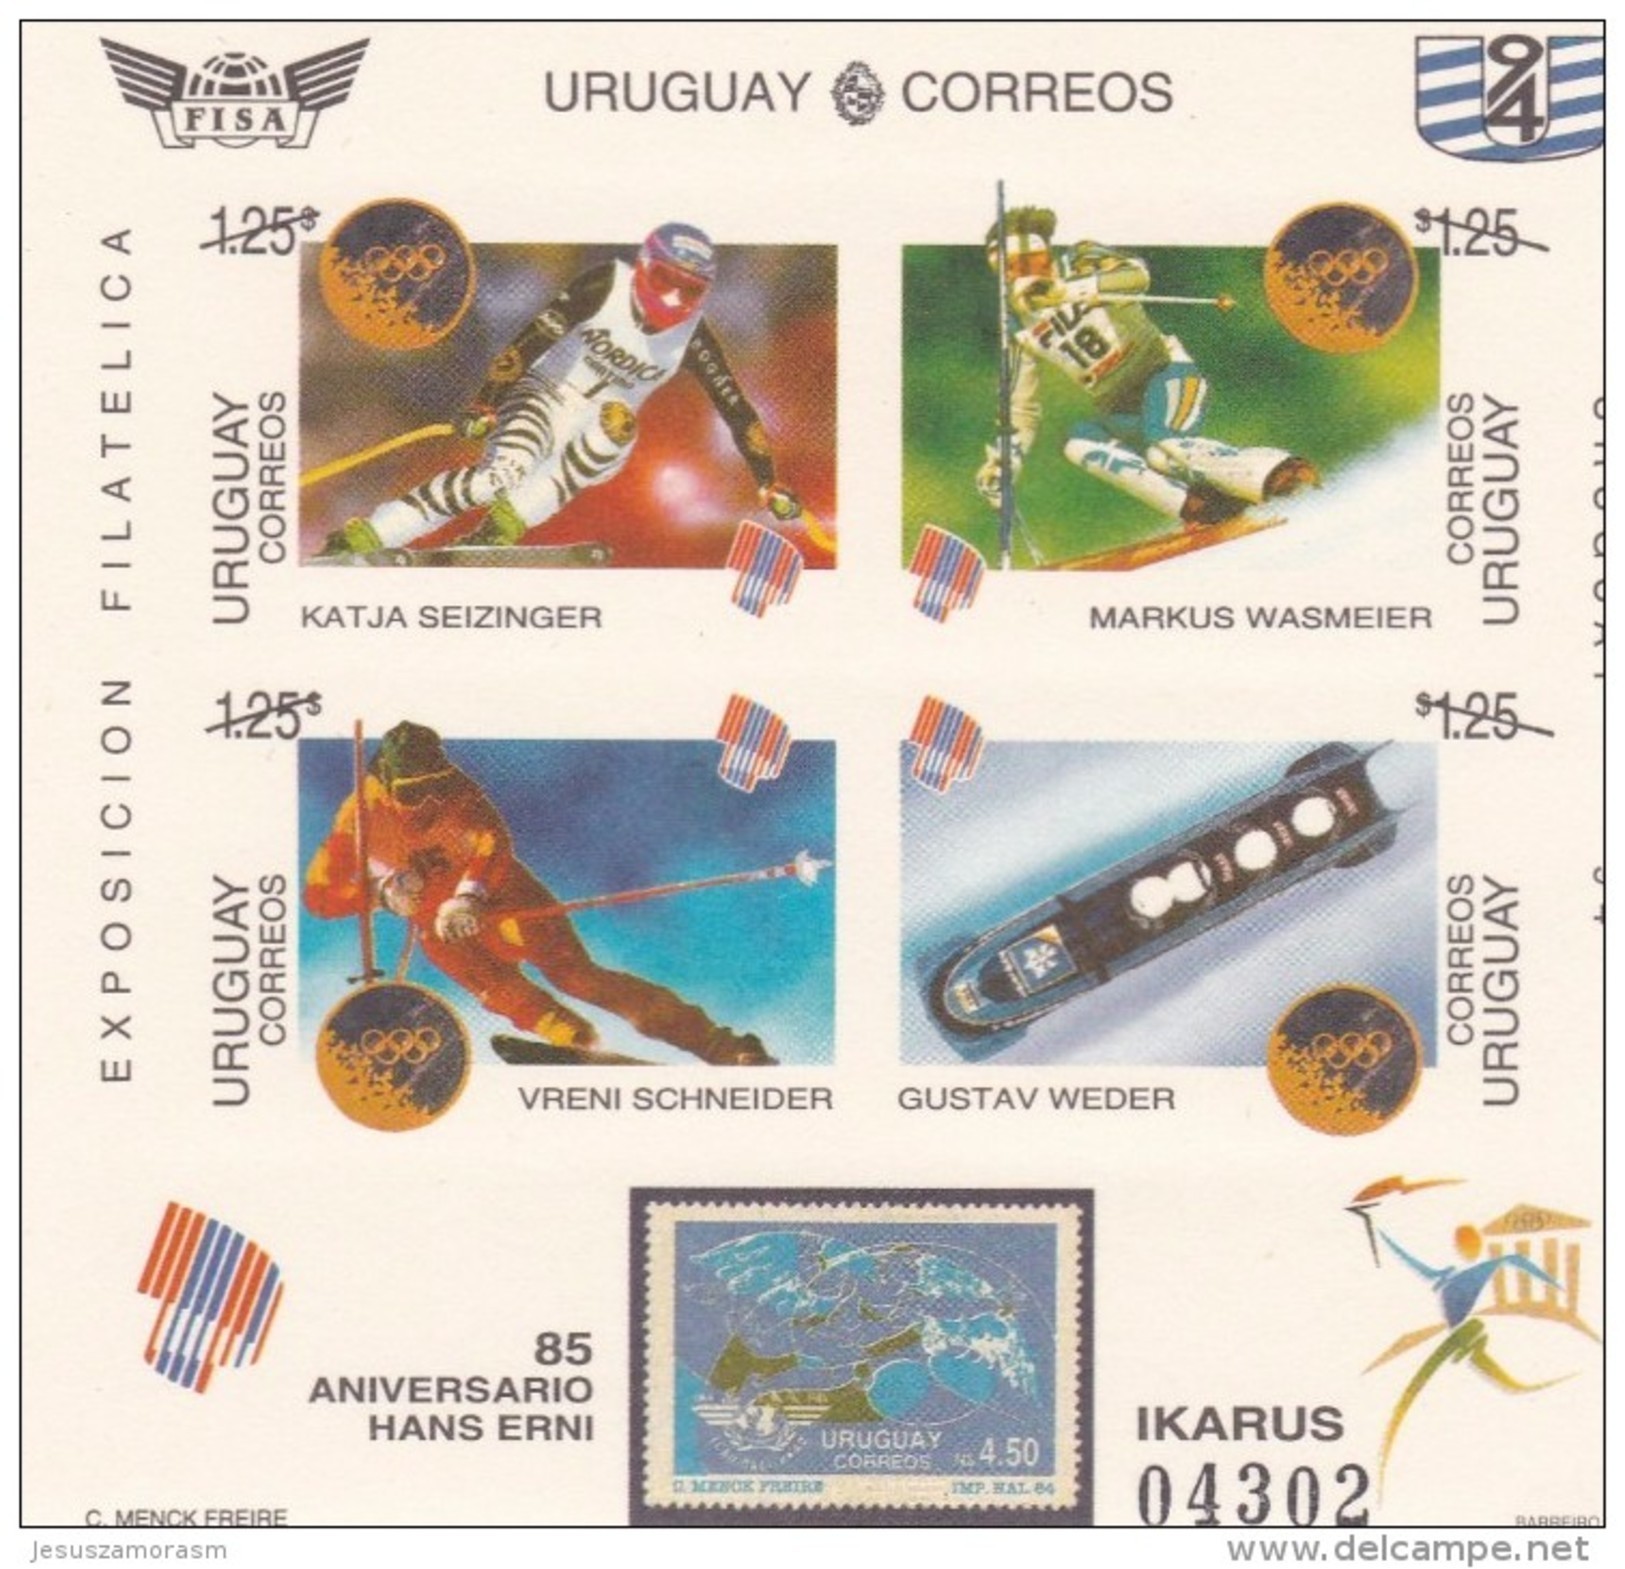 Uruguay Hb 47sd - Uruguay